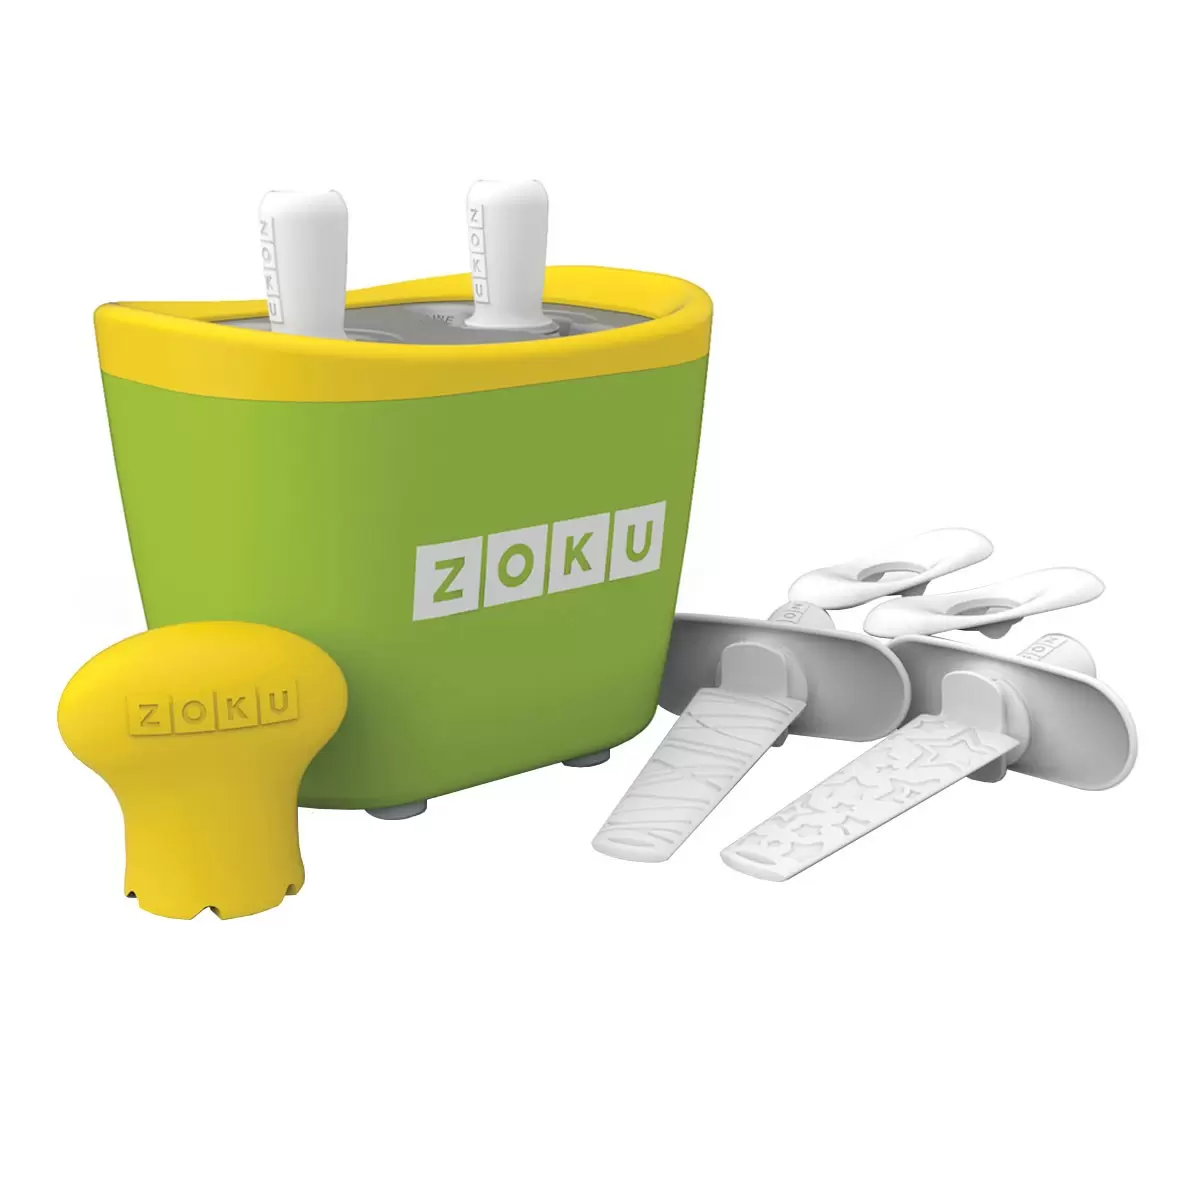 ZOKU 快速製冰棒機 兩支裝 綠色